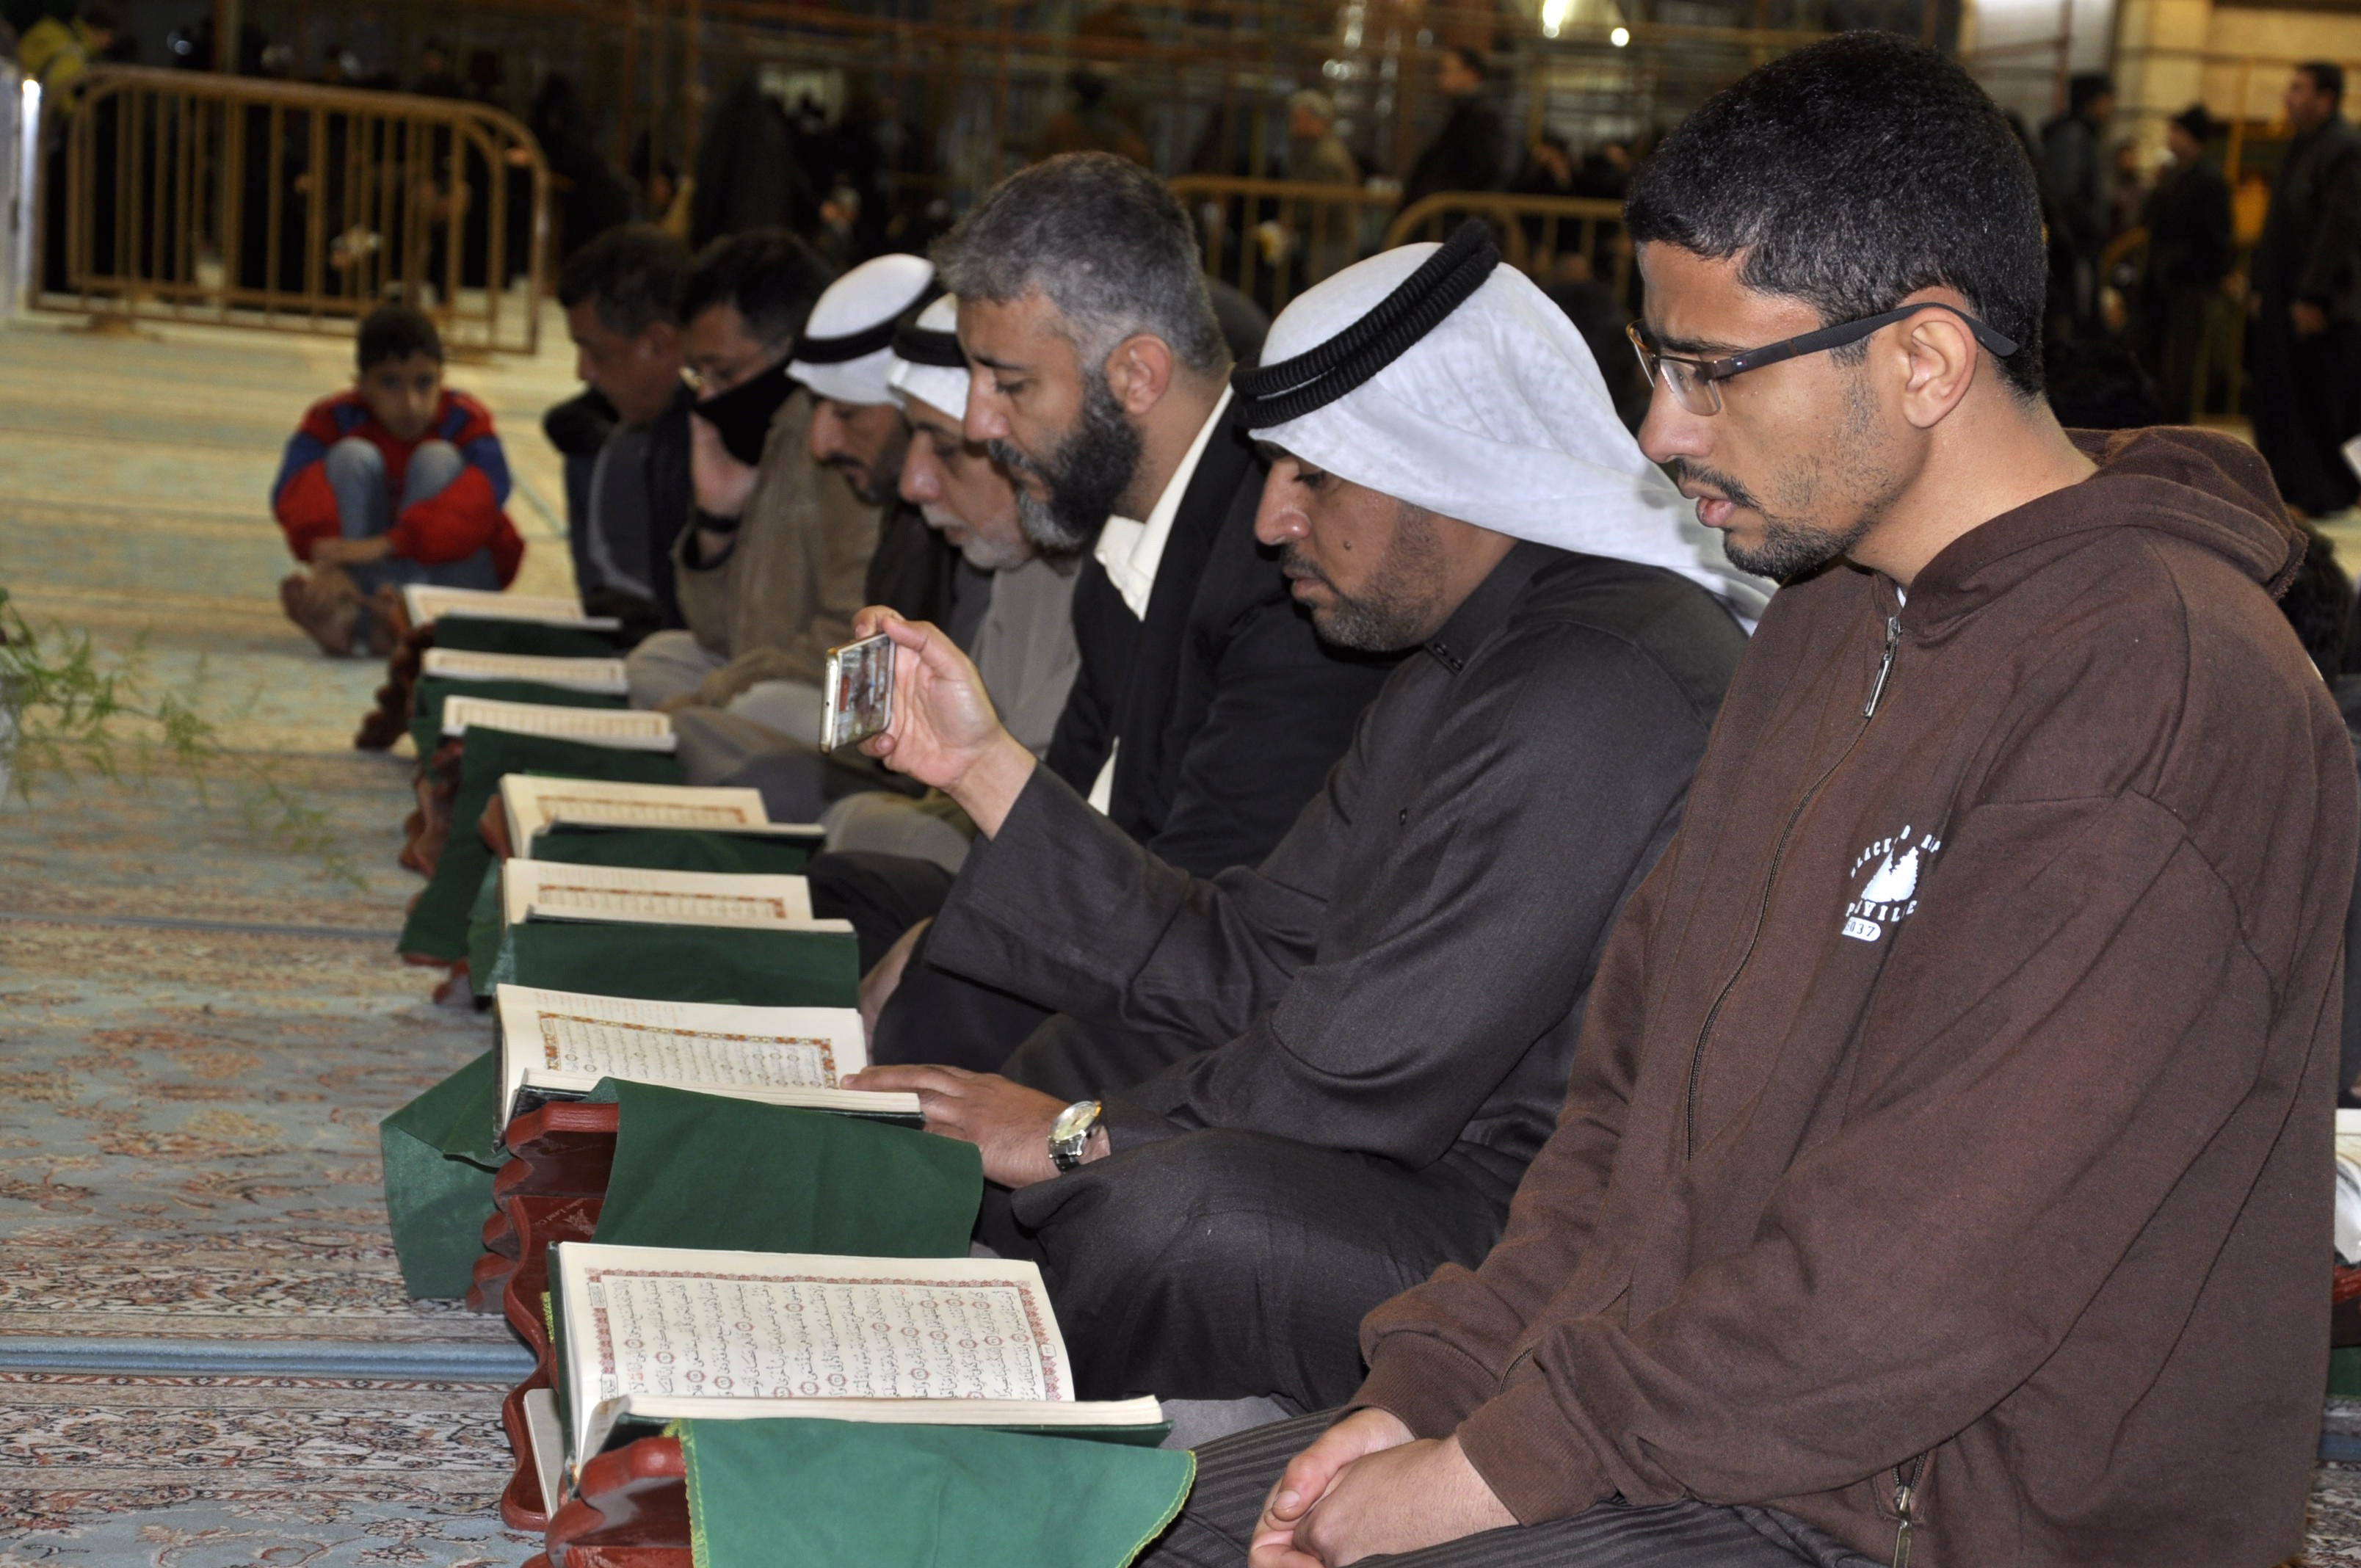 معهد القرآن الكريم في العتبة العبَّاسيَّة المُقدّسة وبالتعاون مع جمعية 